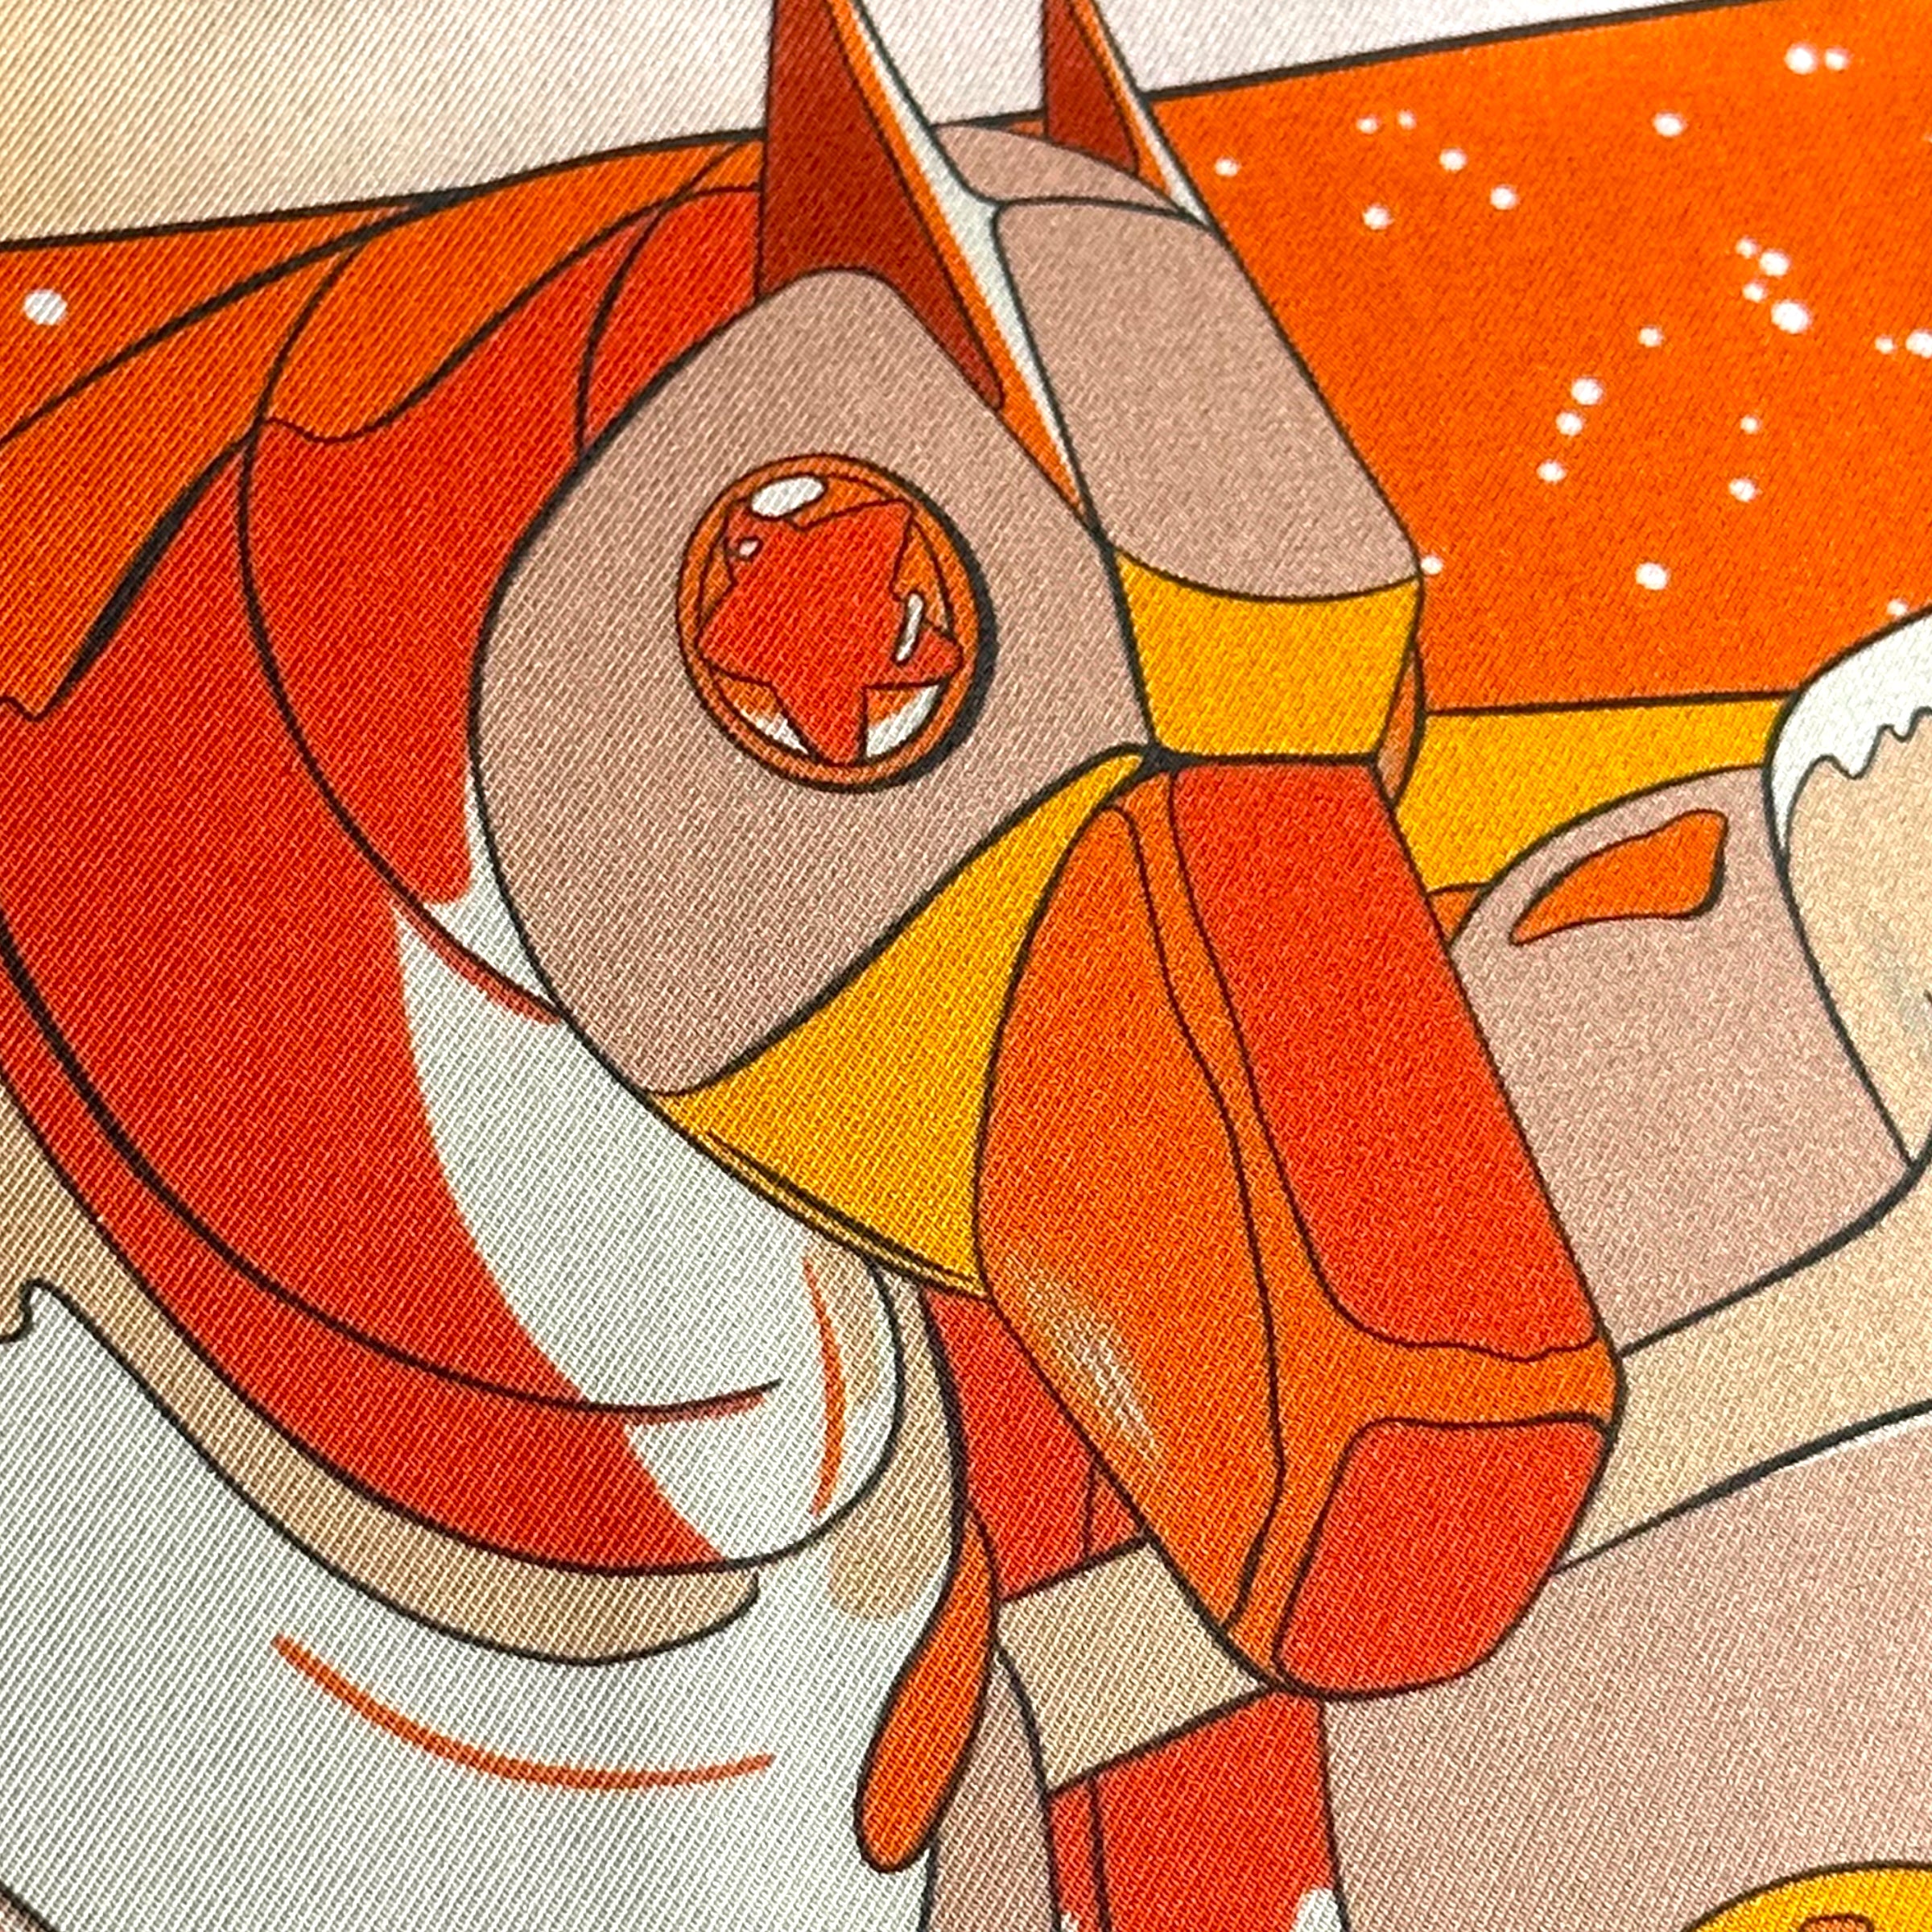 Space-derby-foulard-hermes-tete-cheval-orange